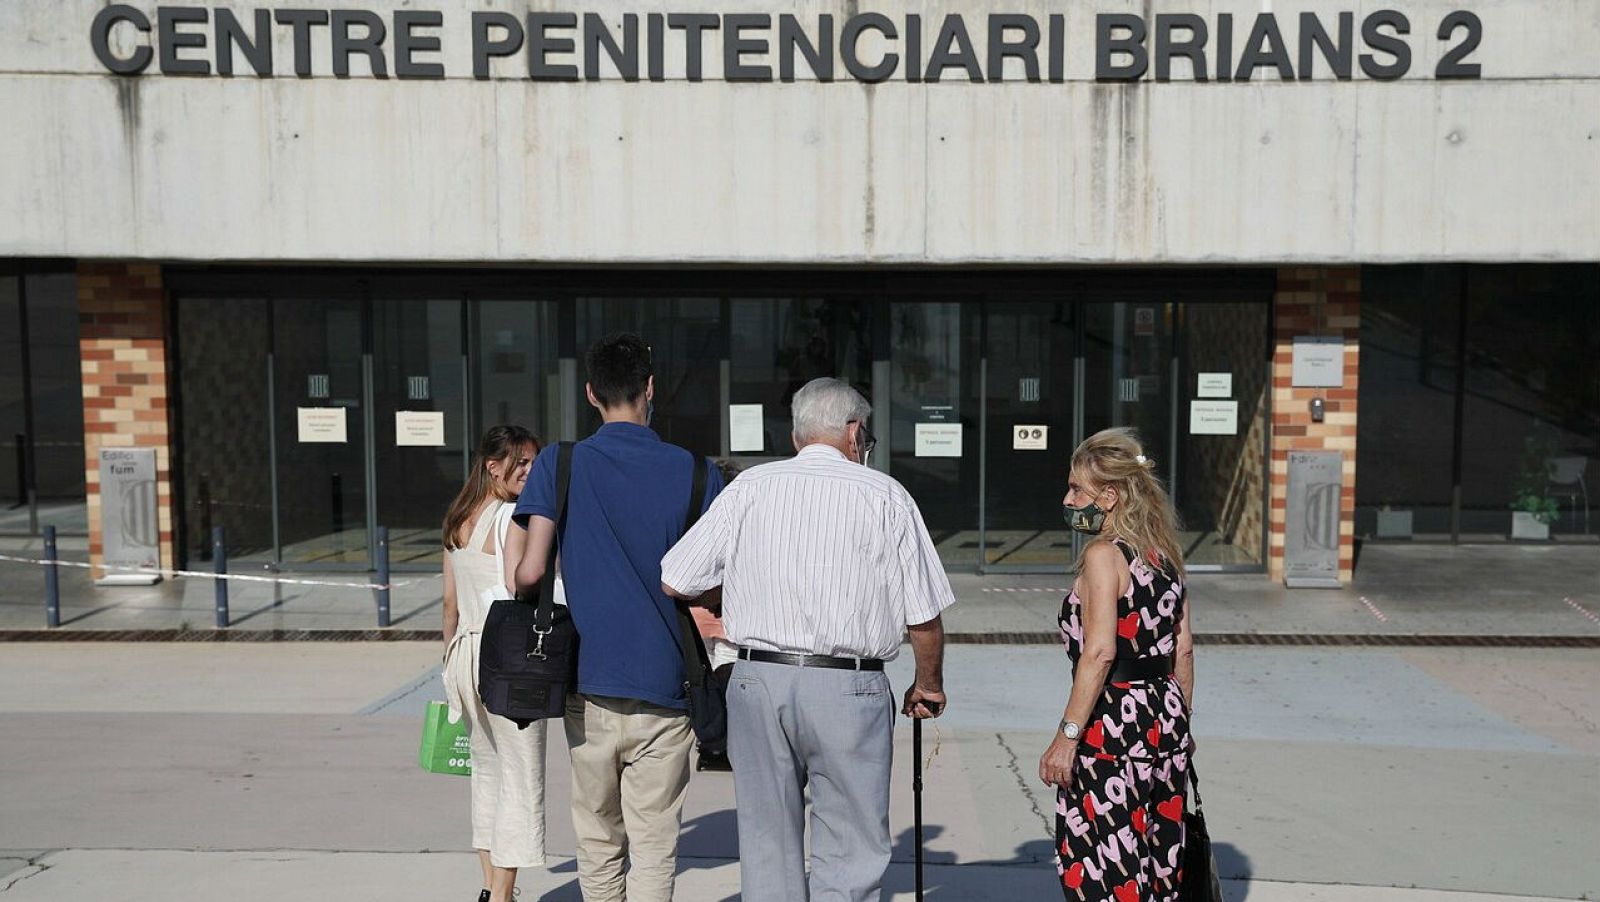 Jordi Montull, exnúmero dos del Palau de la Música, acompañado de su abogada y familiares, a su entrada voluntaria en la cárcel de Brians 2, en Sant Esteve Sesrovires (Barcelona), por la sentencia del llamado "caso Palau".